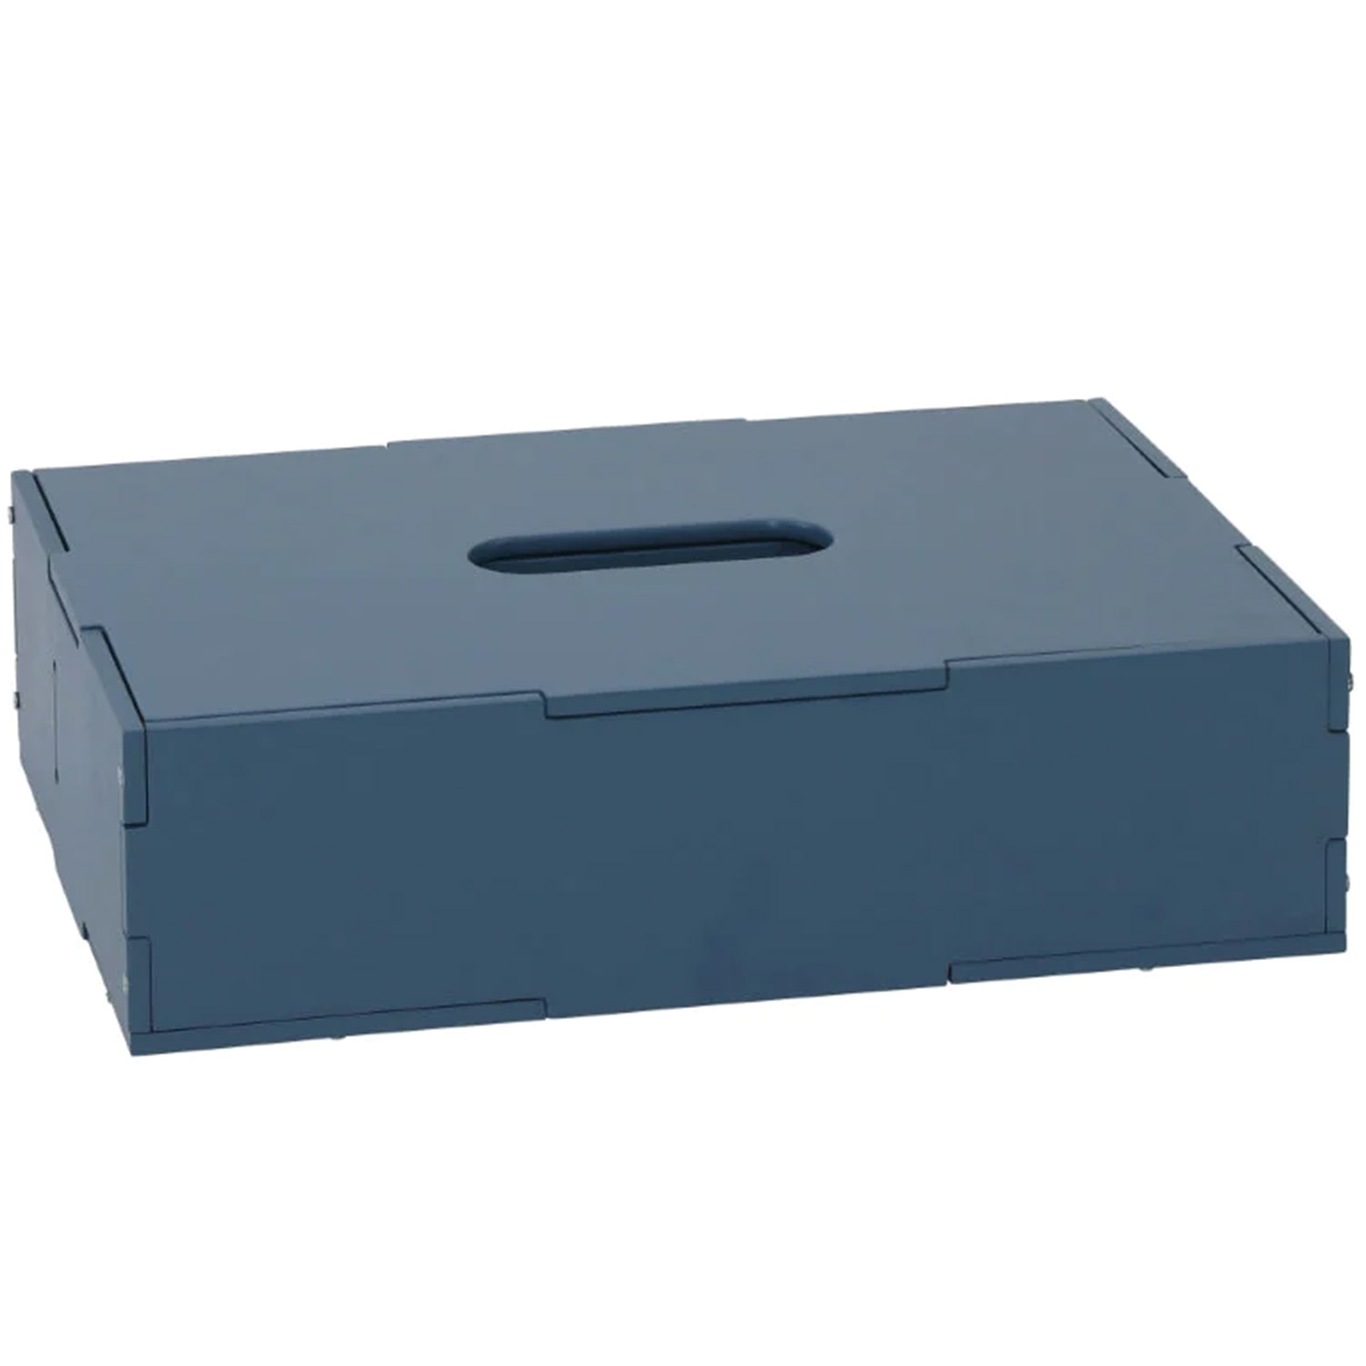 Kiddo Storage Box 24x33.5 cm, Blue